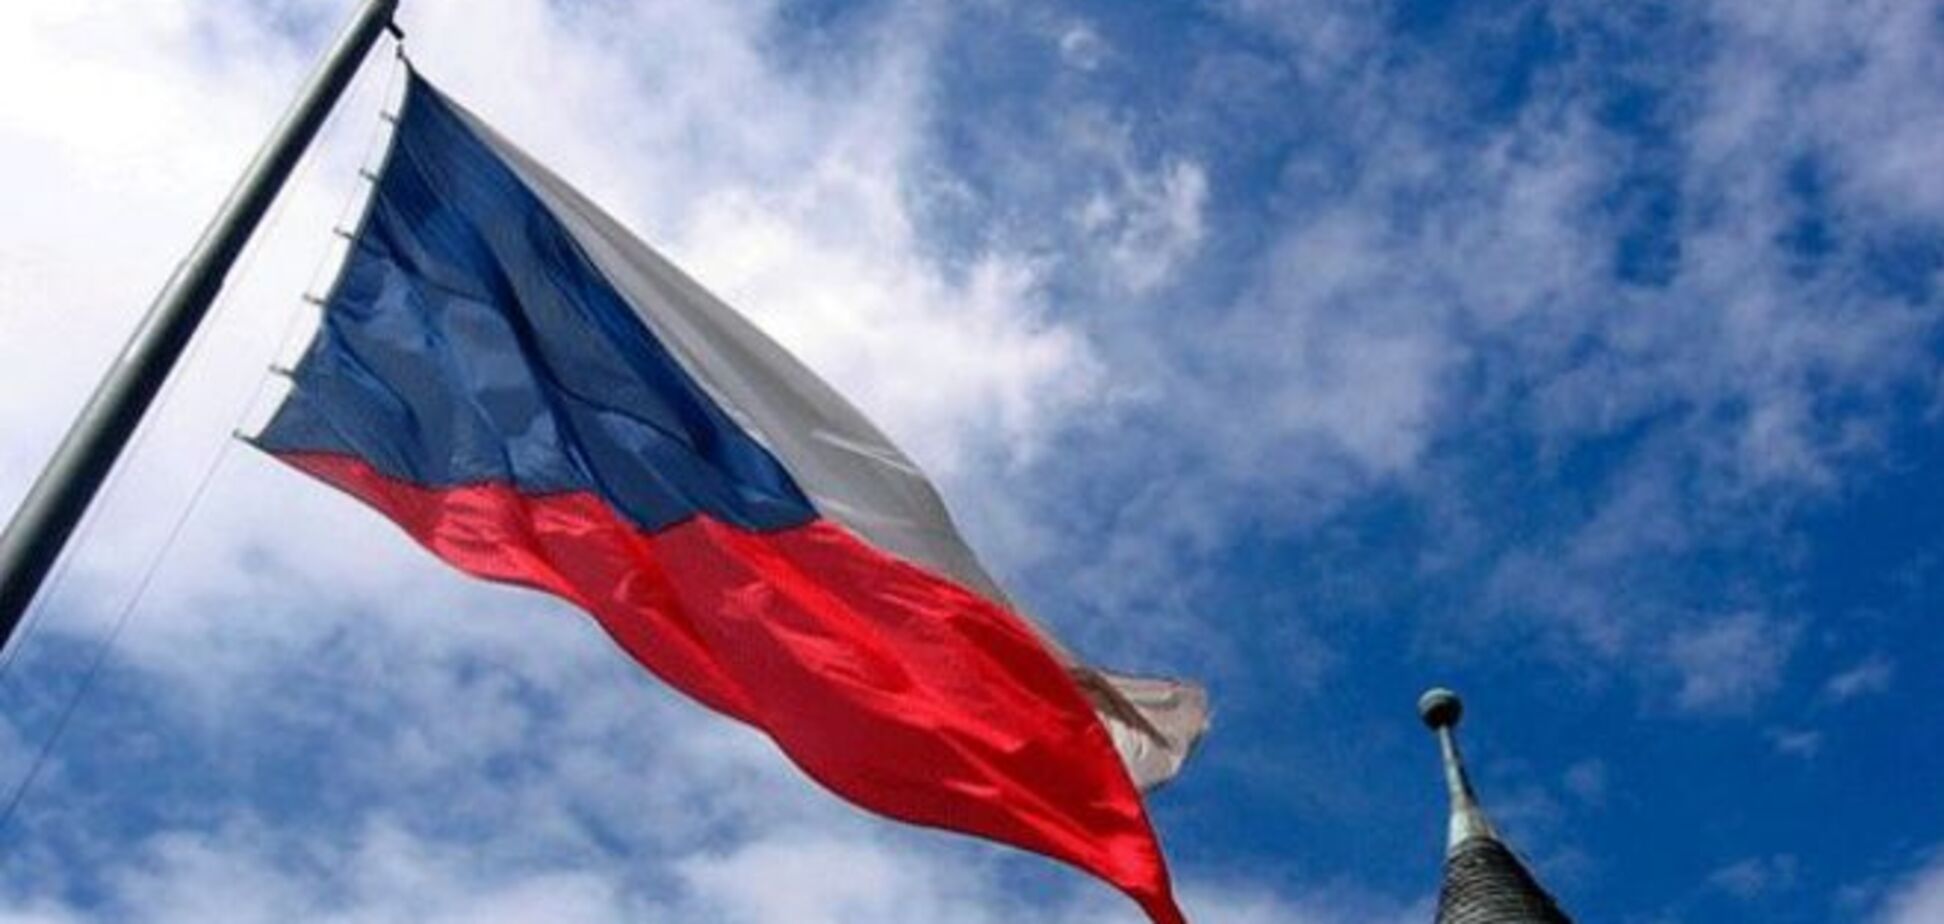 Чехи осуждают пророссийскую политику своего президента и согласны на поставки оружия Украине - опрос